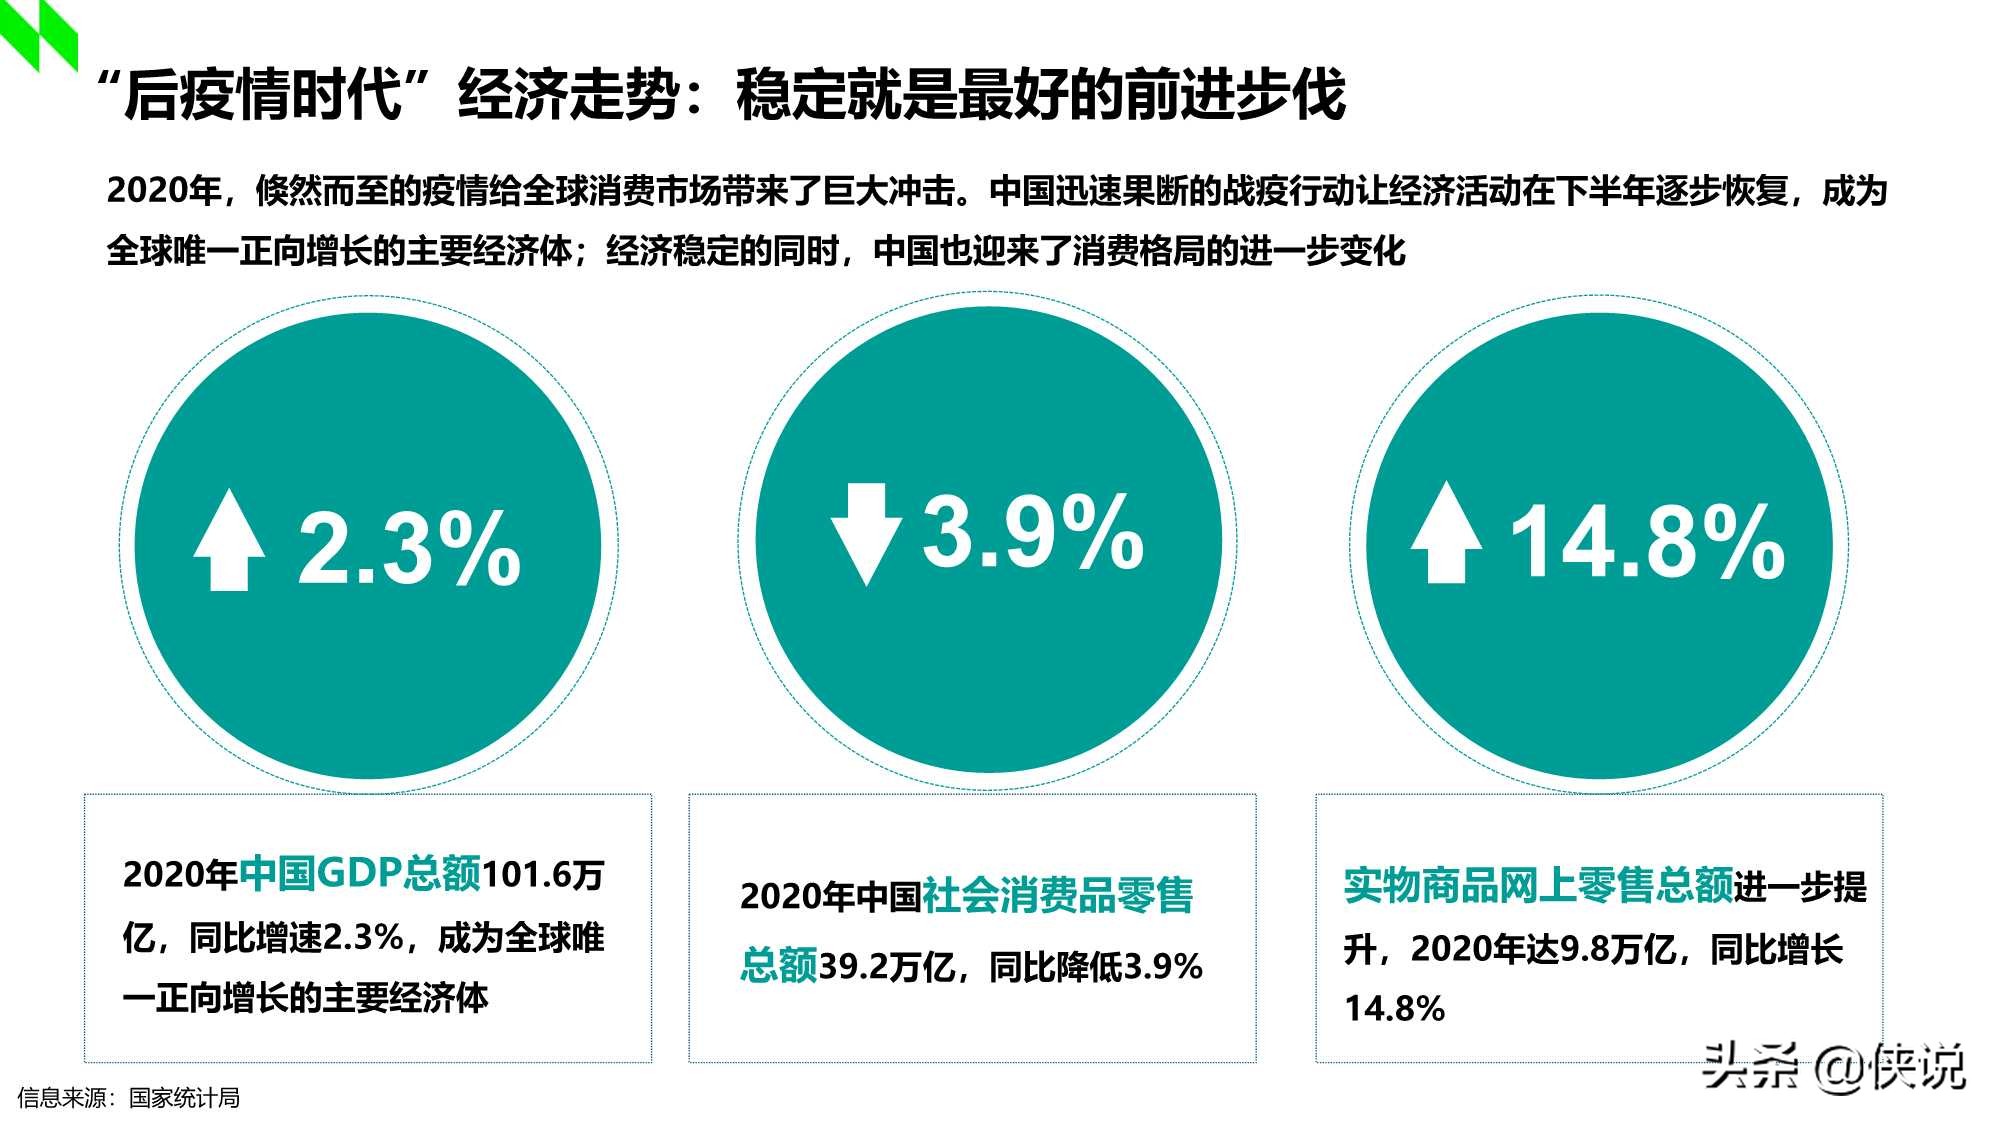 2020-2021年中国购物中心消费者洞察报告